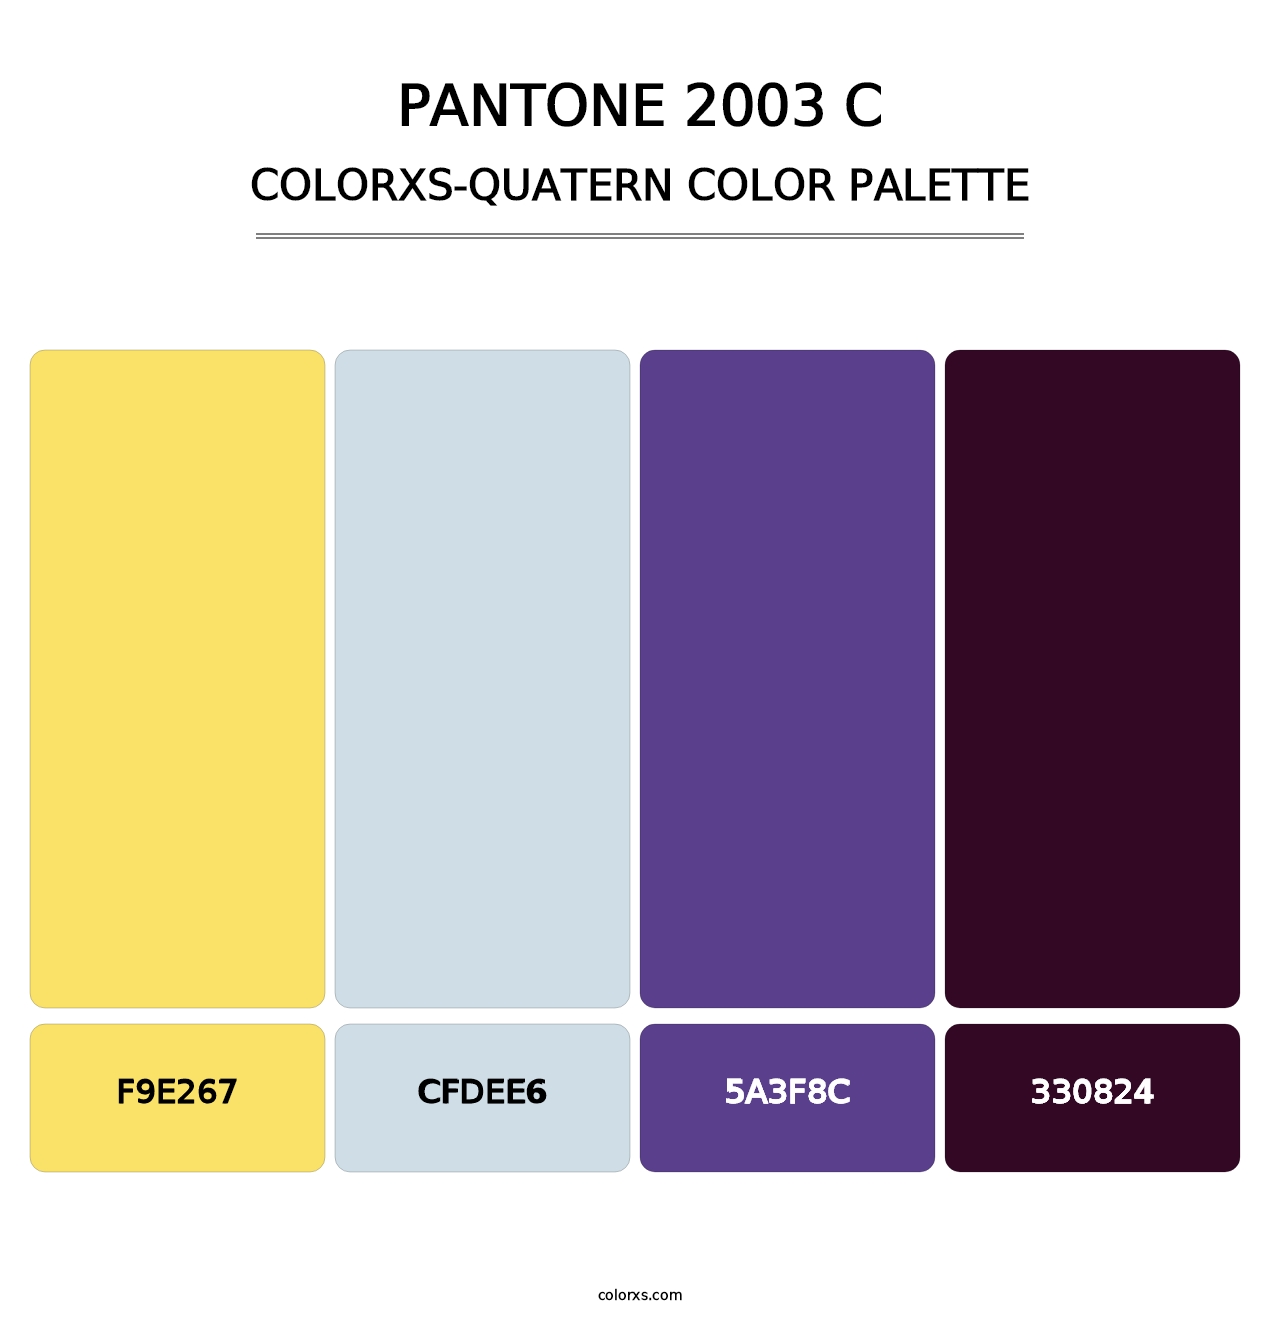 PANTONE 2003 C - Colorxs Quatern Palette